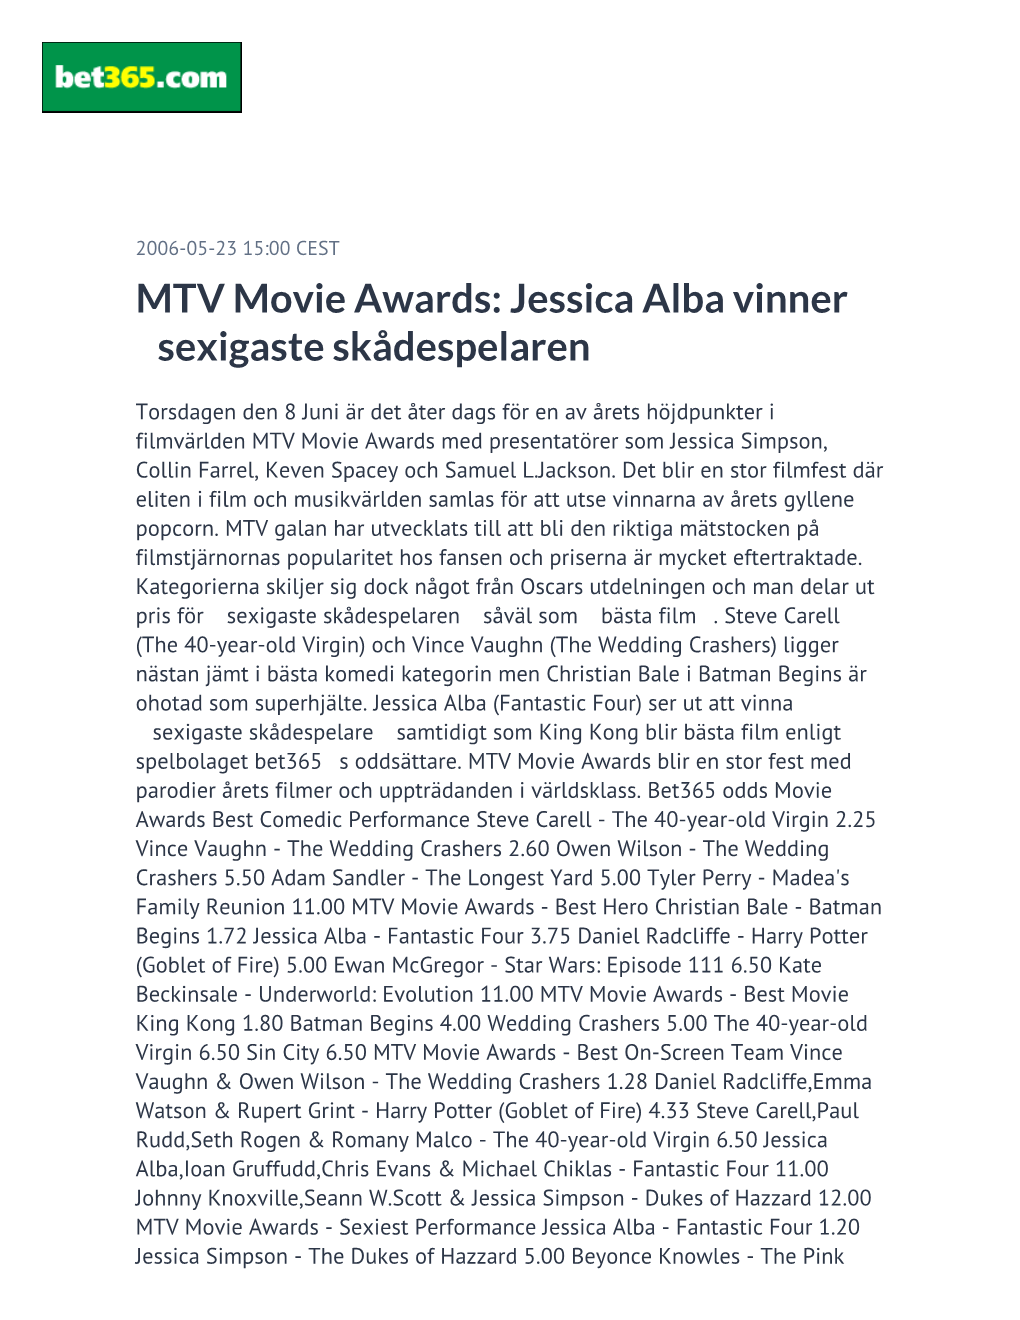 MTV Movie Awards: Jessica Alba Vinner Sexigaste Skådespelaren